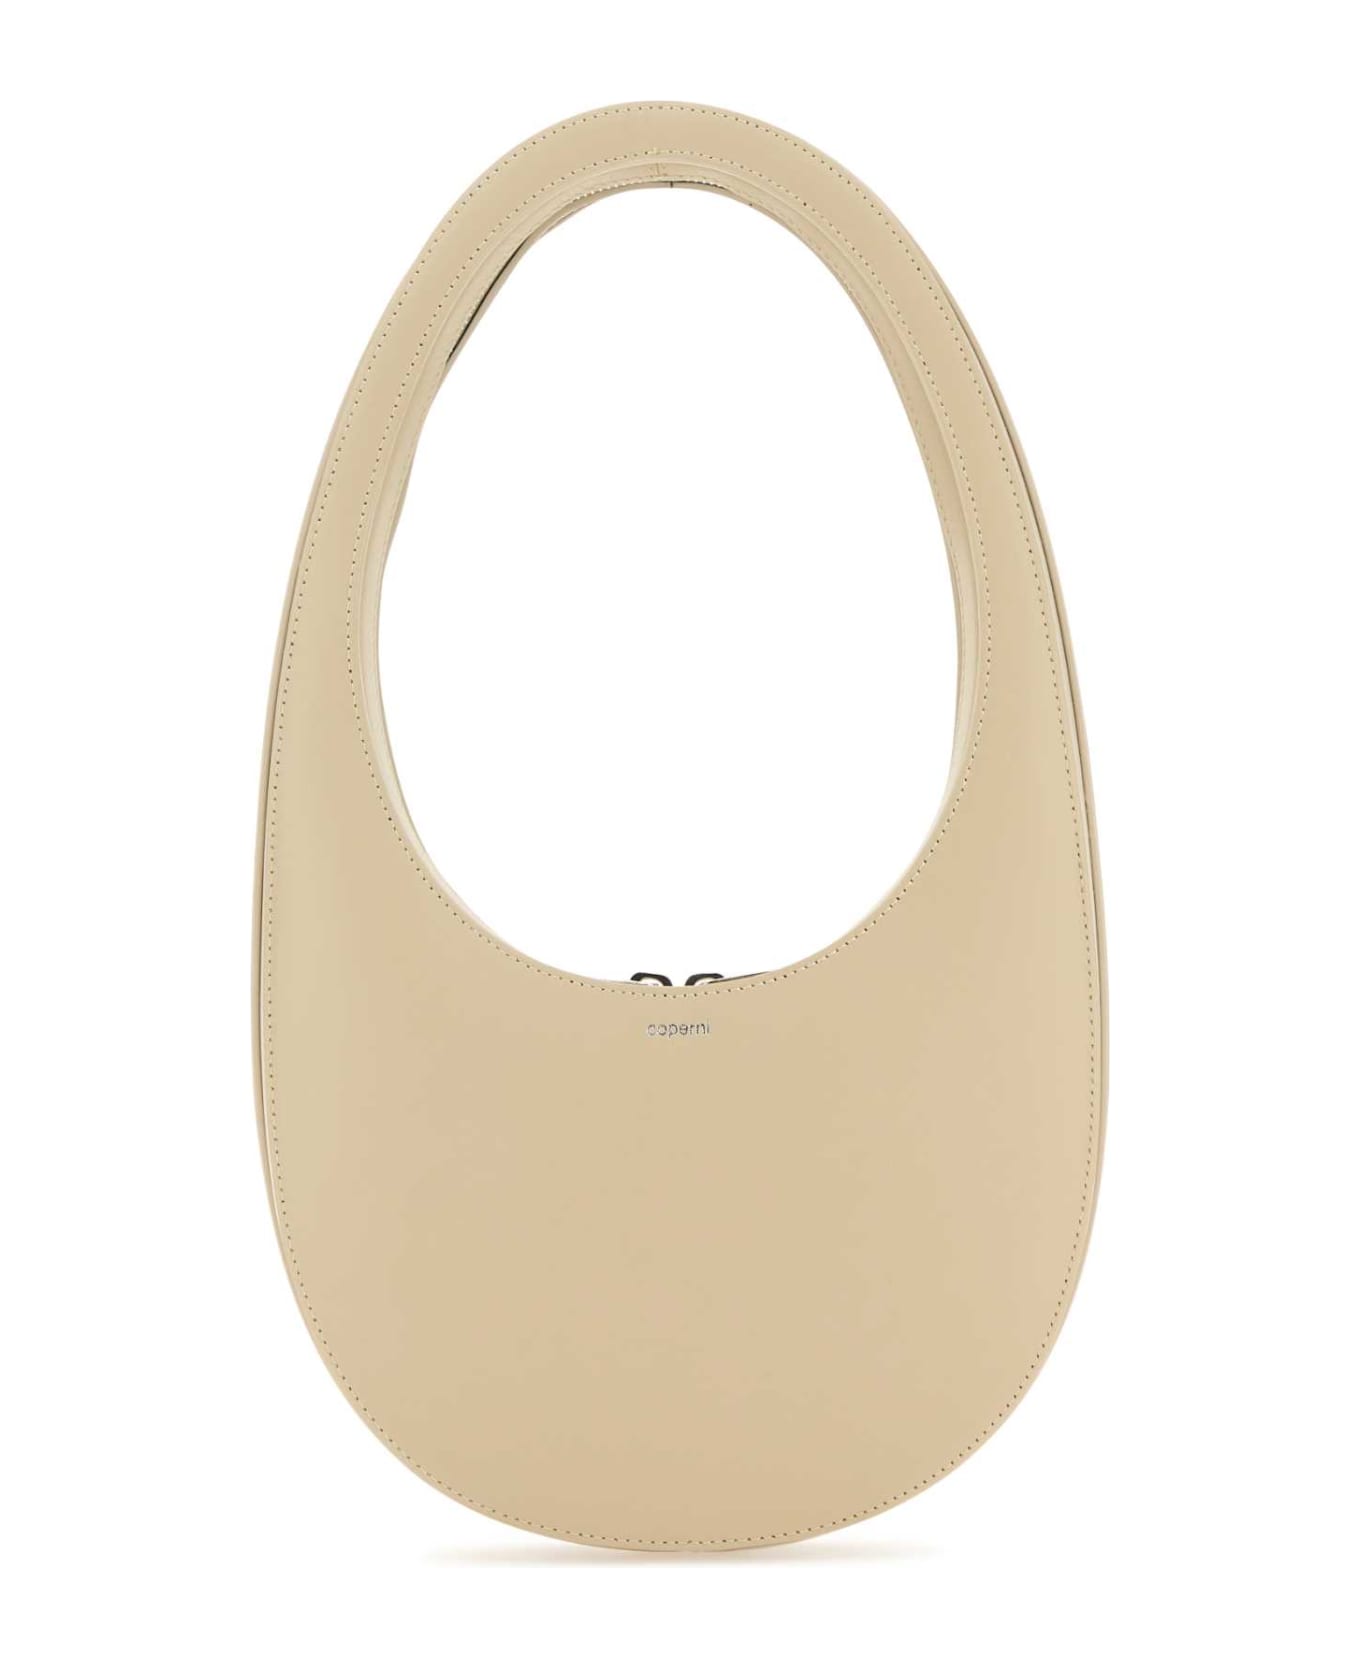 Coperni Sand Leather Swipe Handbag - SAND